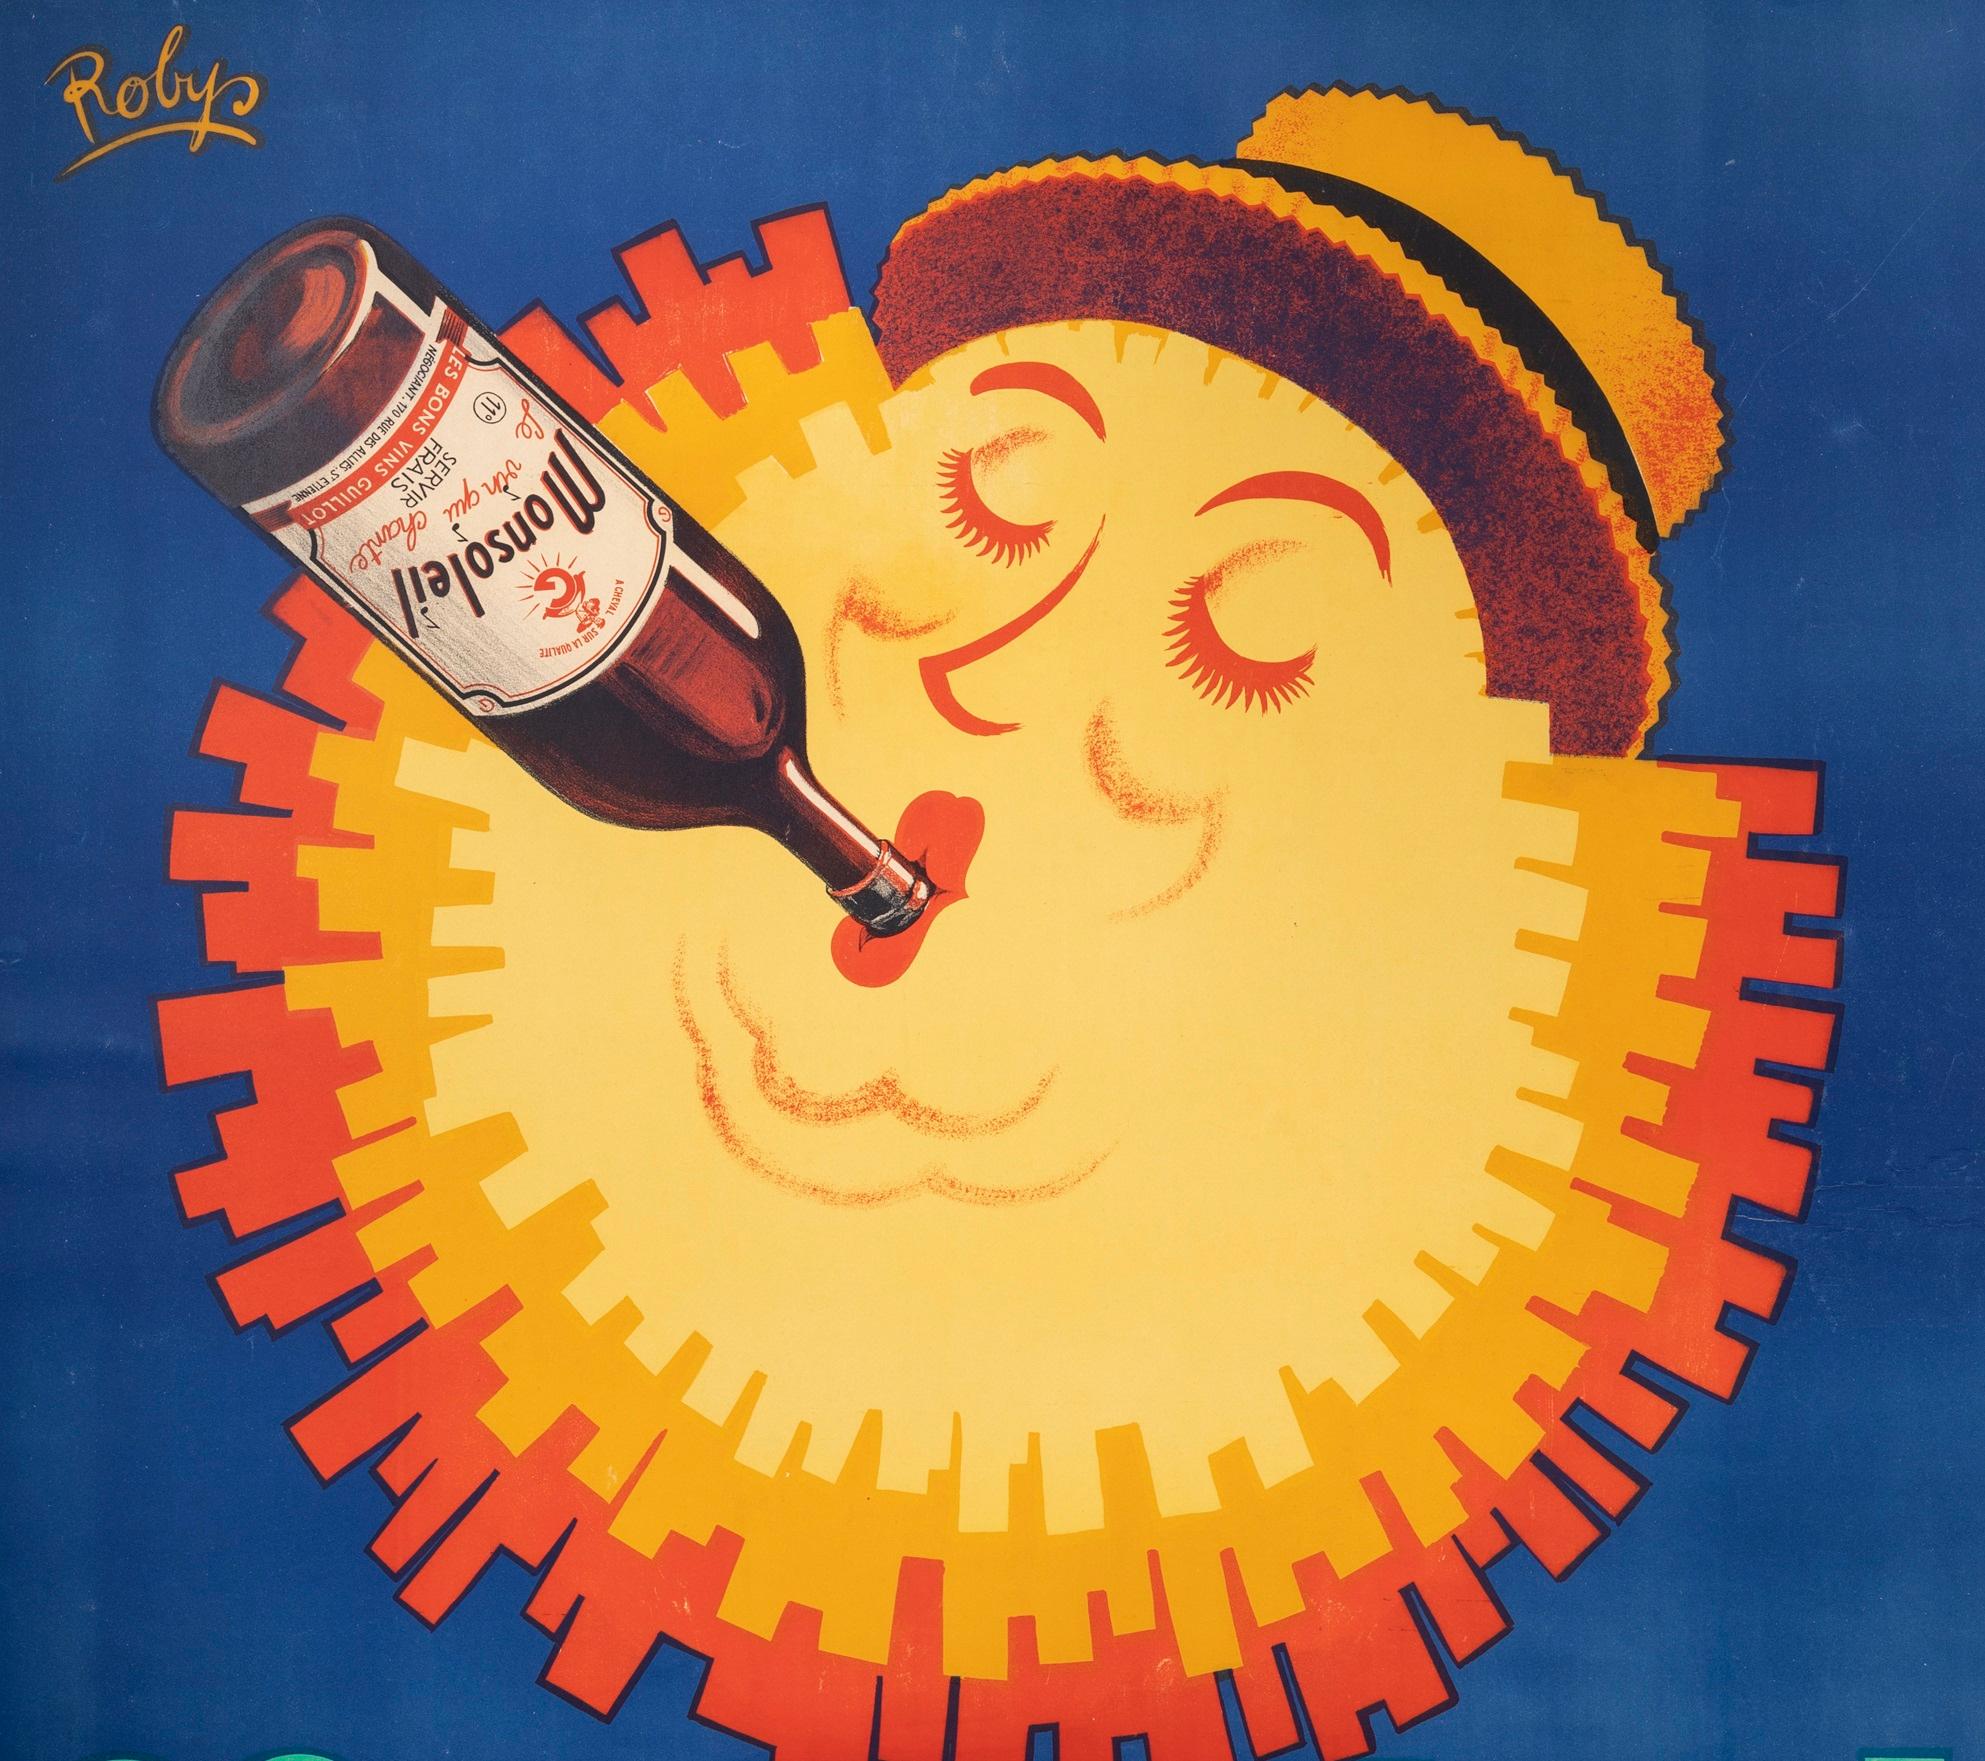 Original Vintage Poster für Monsoleil, Weinplakat, erstellt von Robys im Jahr 1940.

Künstler: Robys (Robert Wolff 1916-1995)

Titel: Monsoleil - Les bons vins Guillot

Datum: ca. 1940

Größe (B x H): 47,2 x 63 in / 120 x 160 cm

Druckerei: Avenir